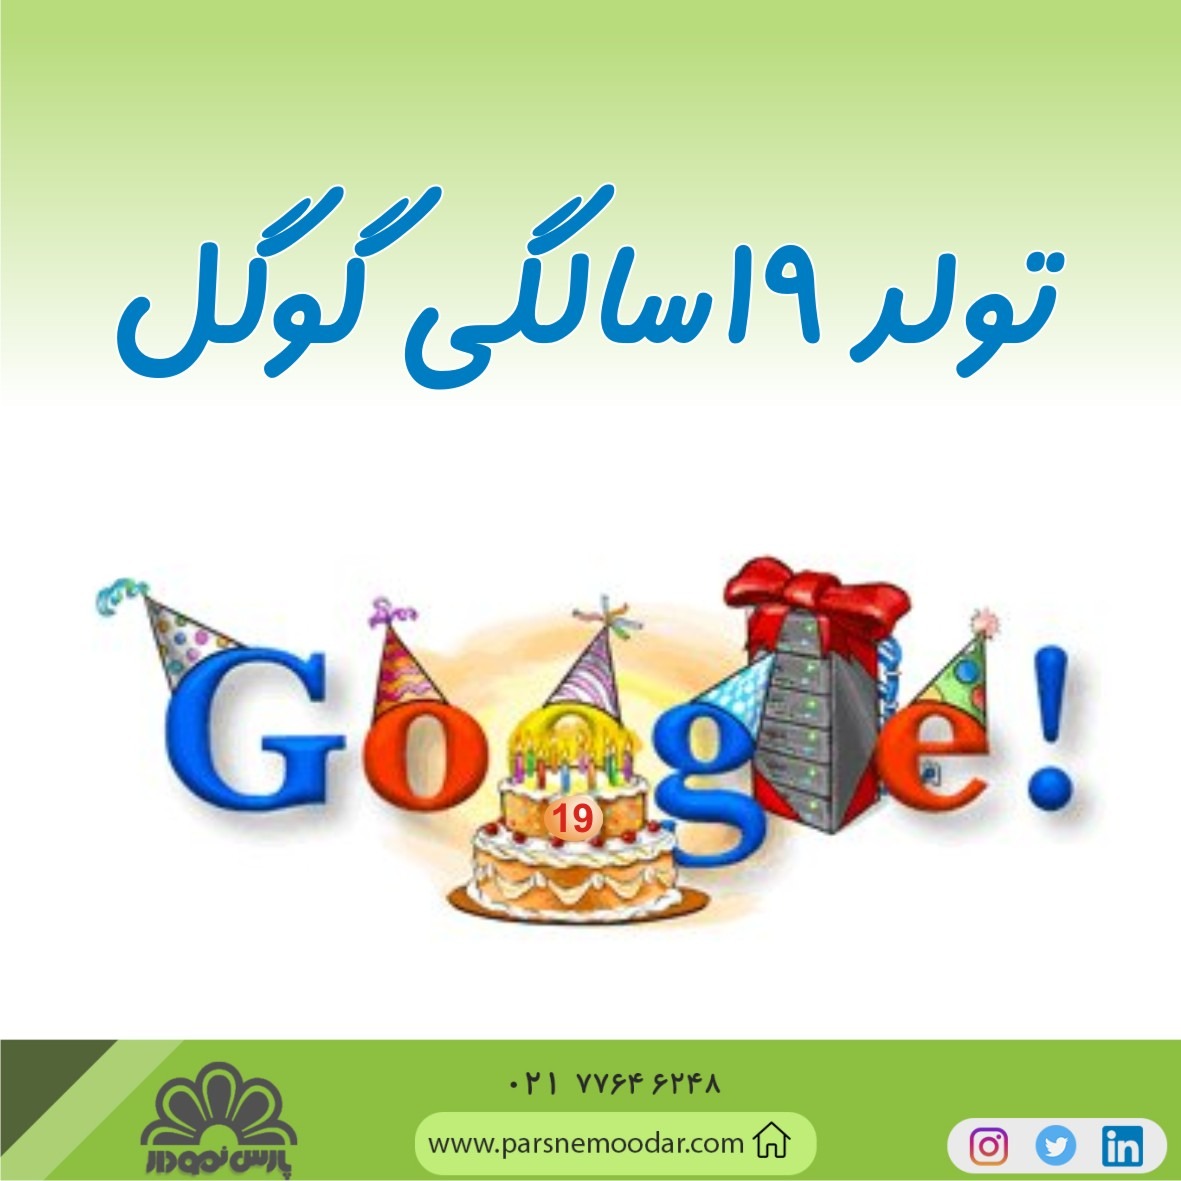 گوگل برند برتر و اول جهان